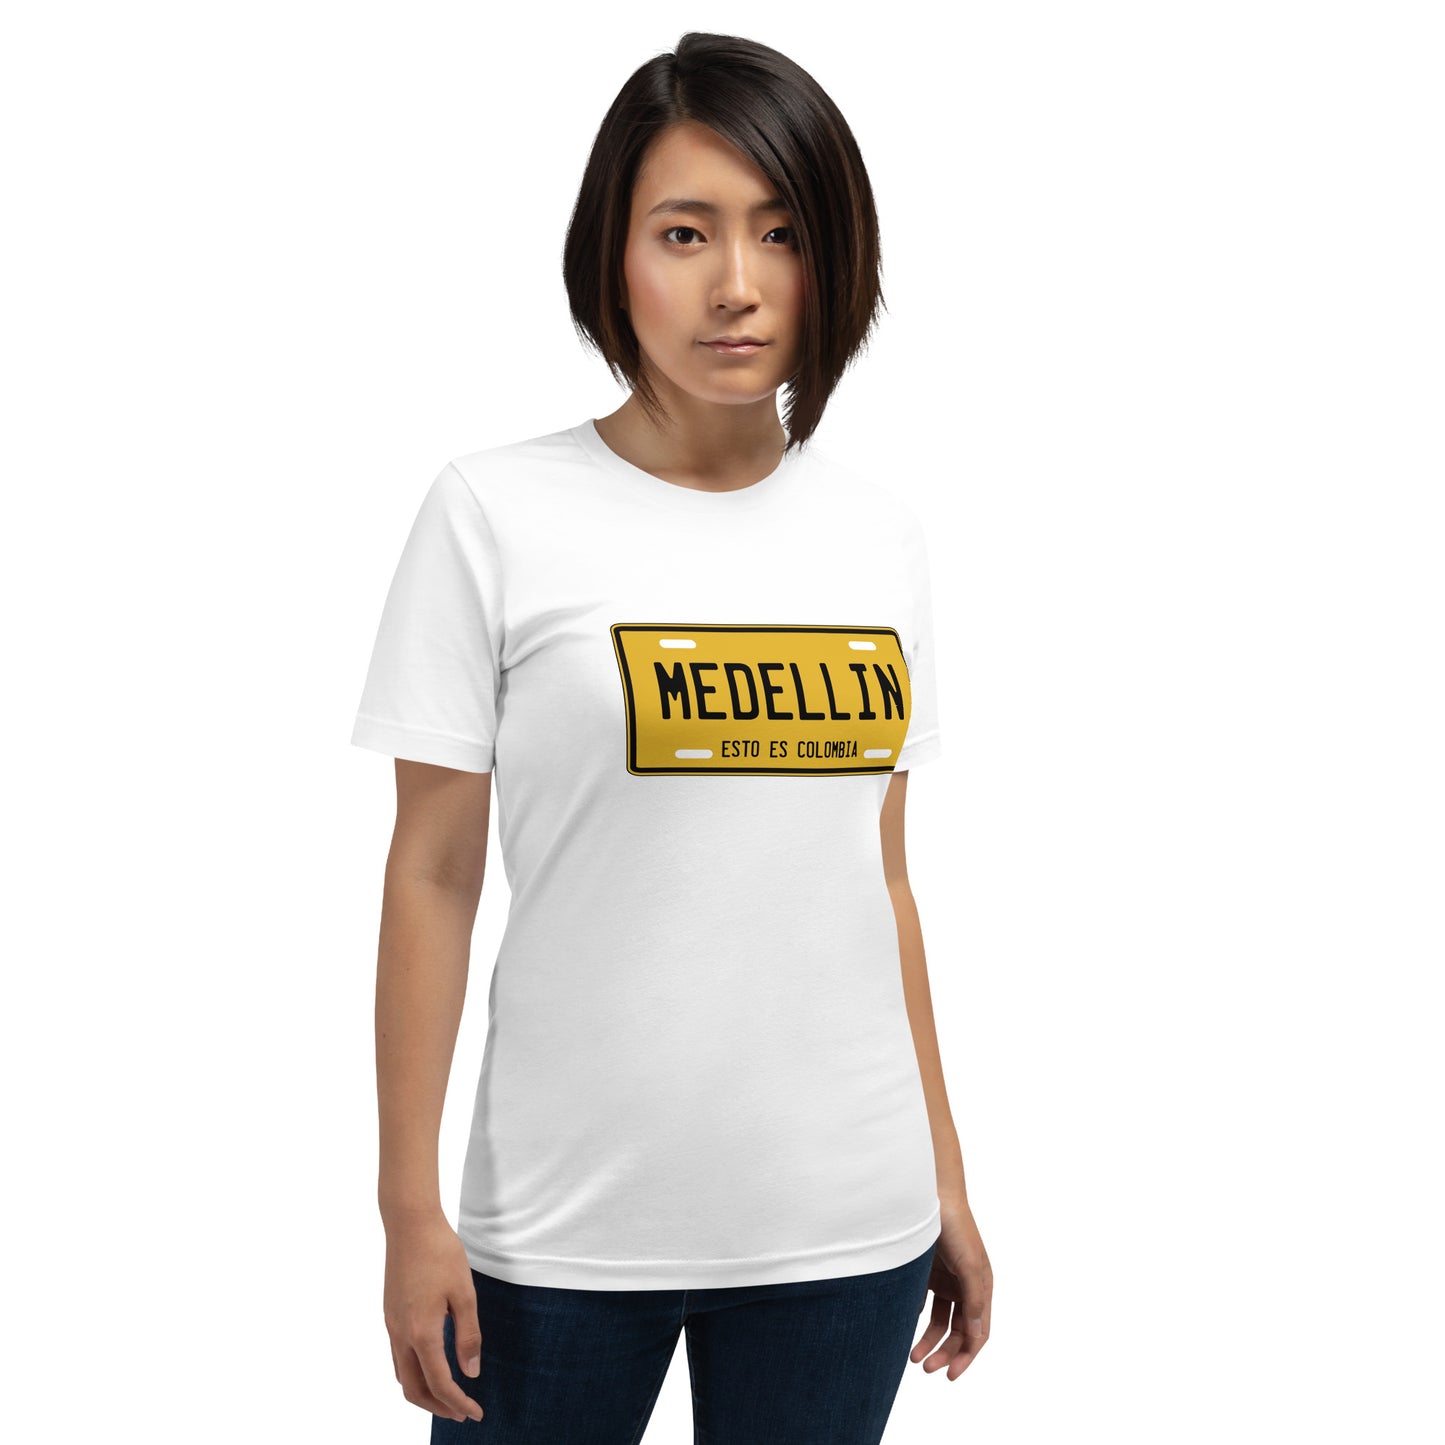 Muestra tu orgullo colombiano con la Camiseta Medellín esto es Colombia. Diseñada con los mejores materiales y un estampado duradero.